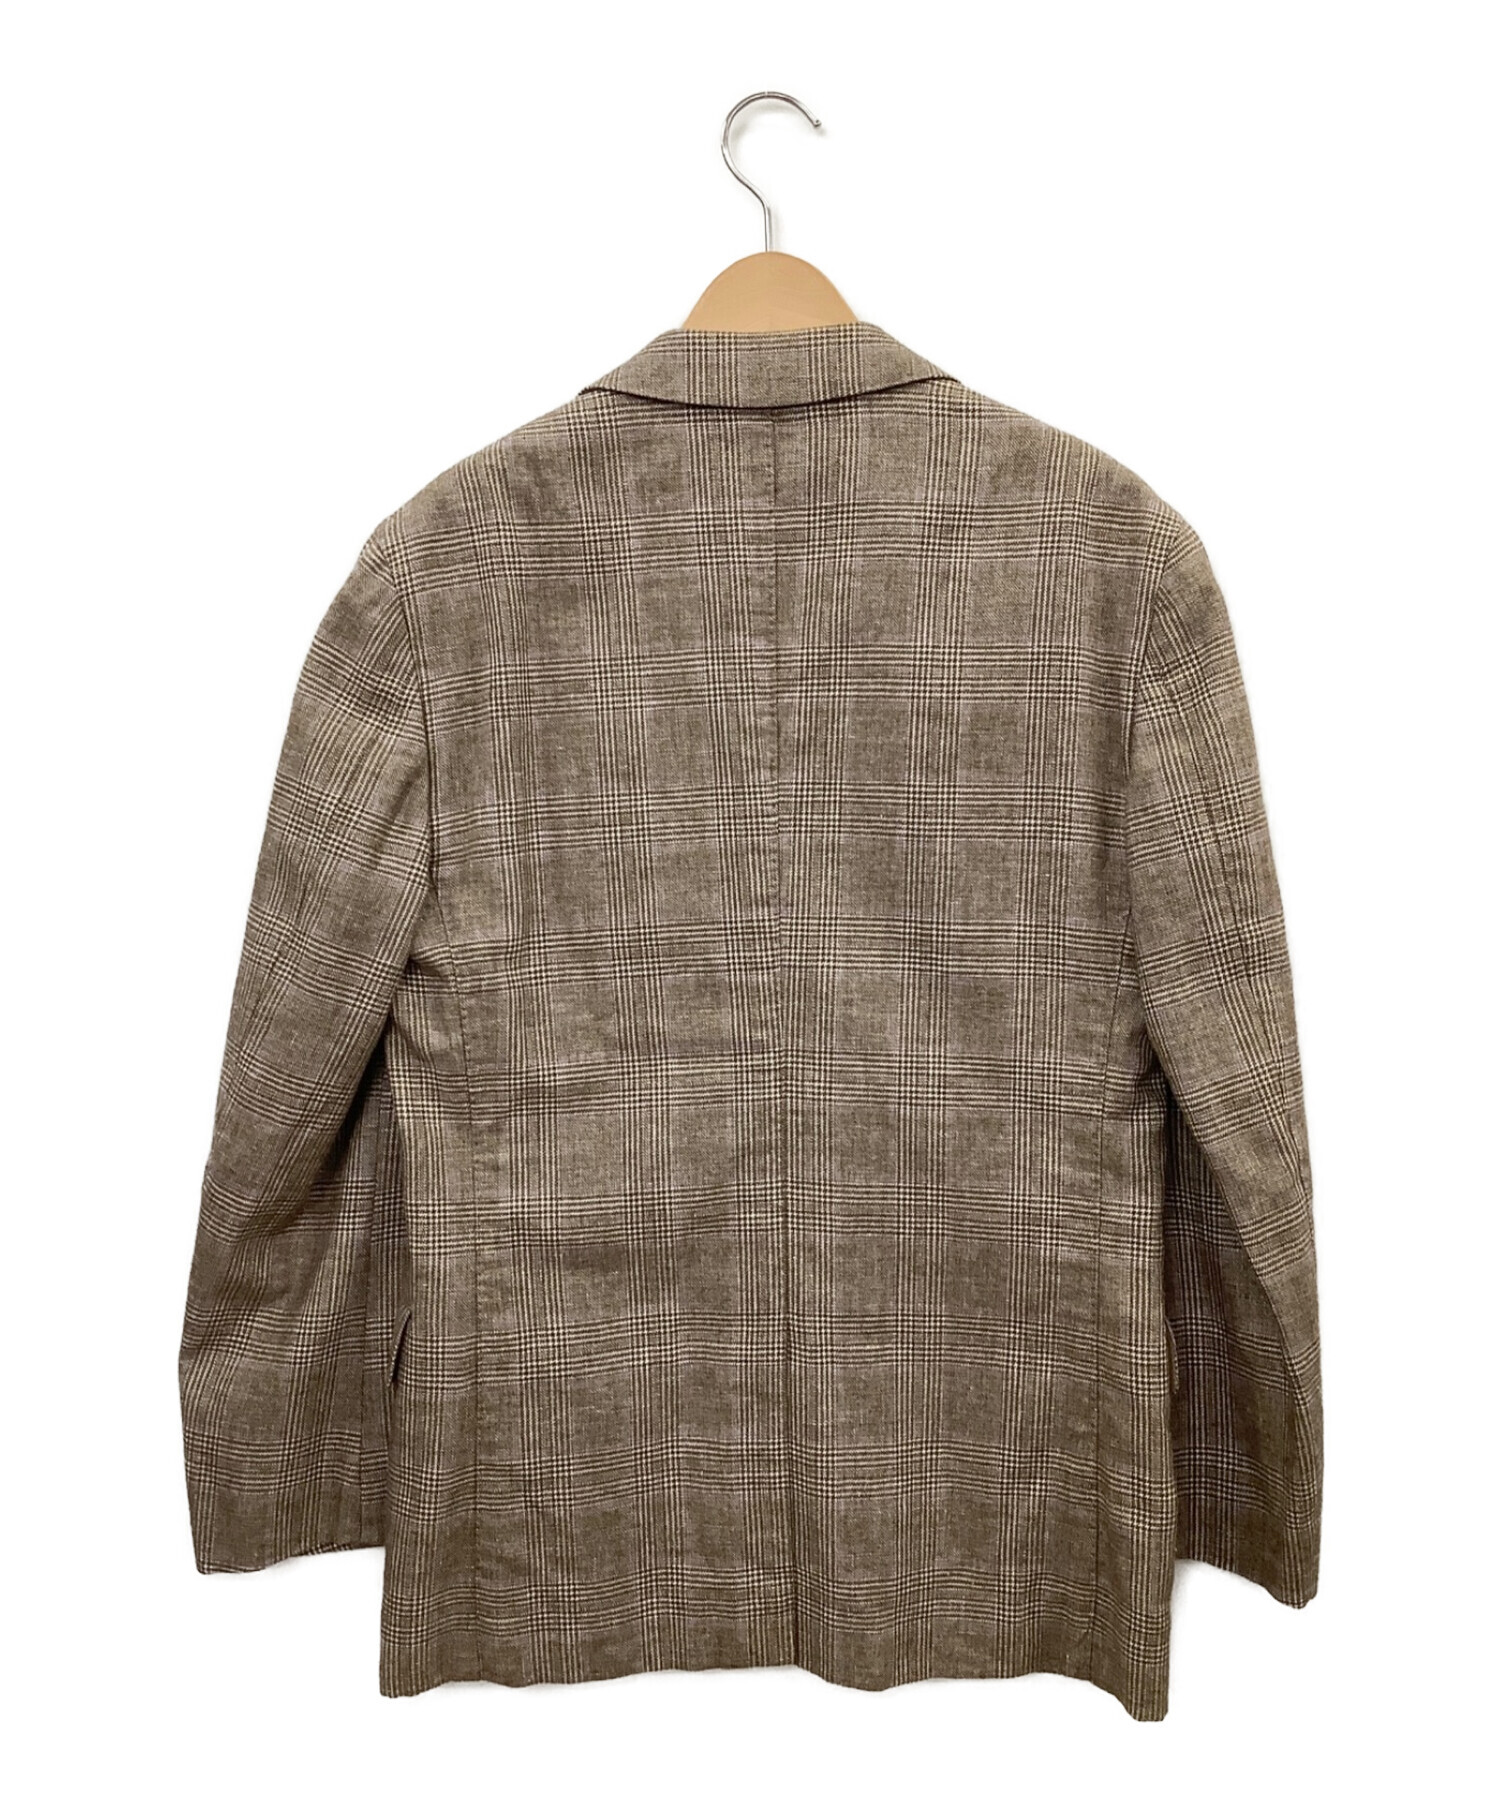 Artigianale (アルティジャナーレ) グレンチェックジャケット グレー×パープル サイズ:46